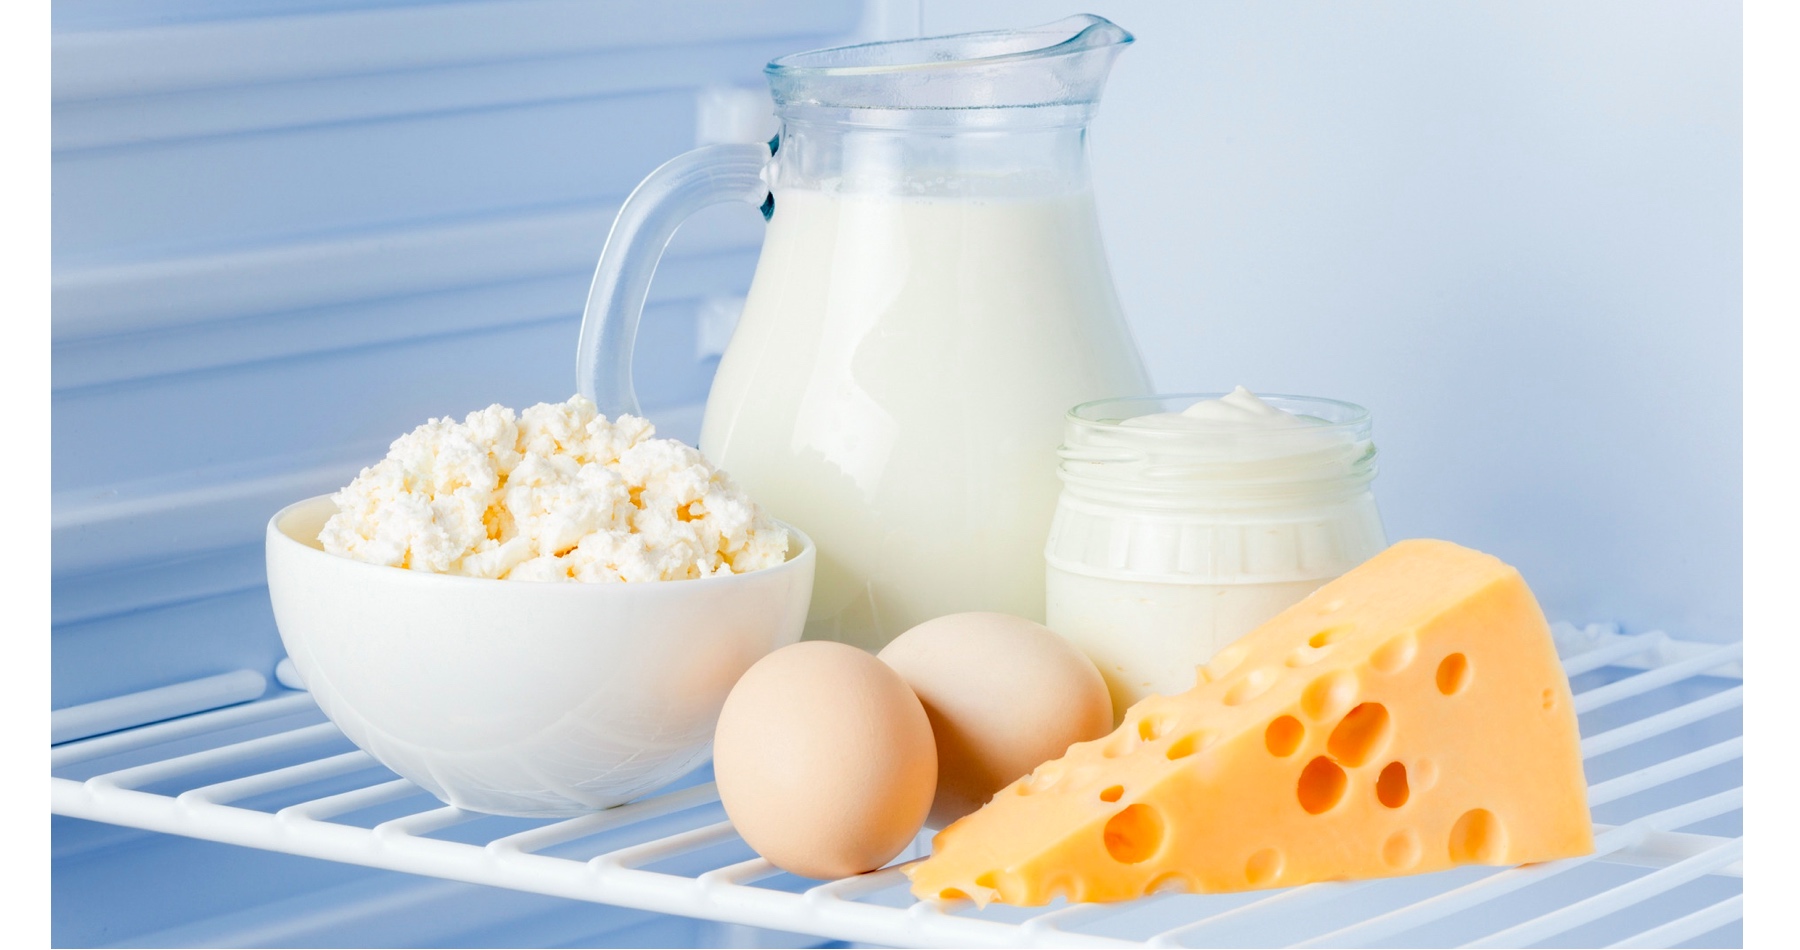 Mlieko, syry či vajcia  už druhý mesiac za sebou lacnejú. Analytici načrtli ďalší cenový vývoj pri potravinách